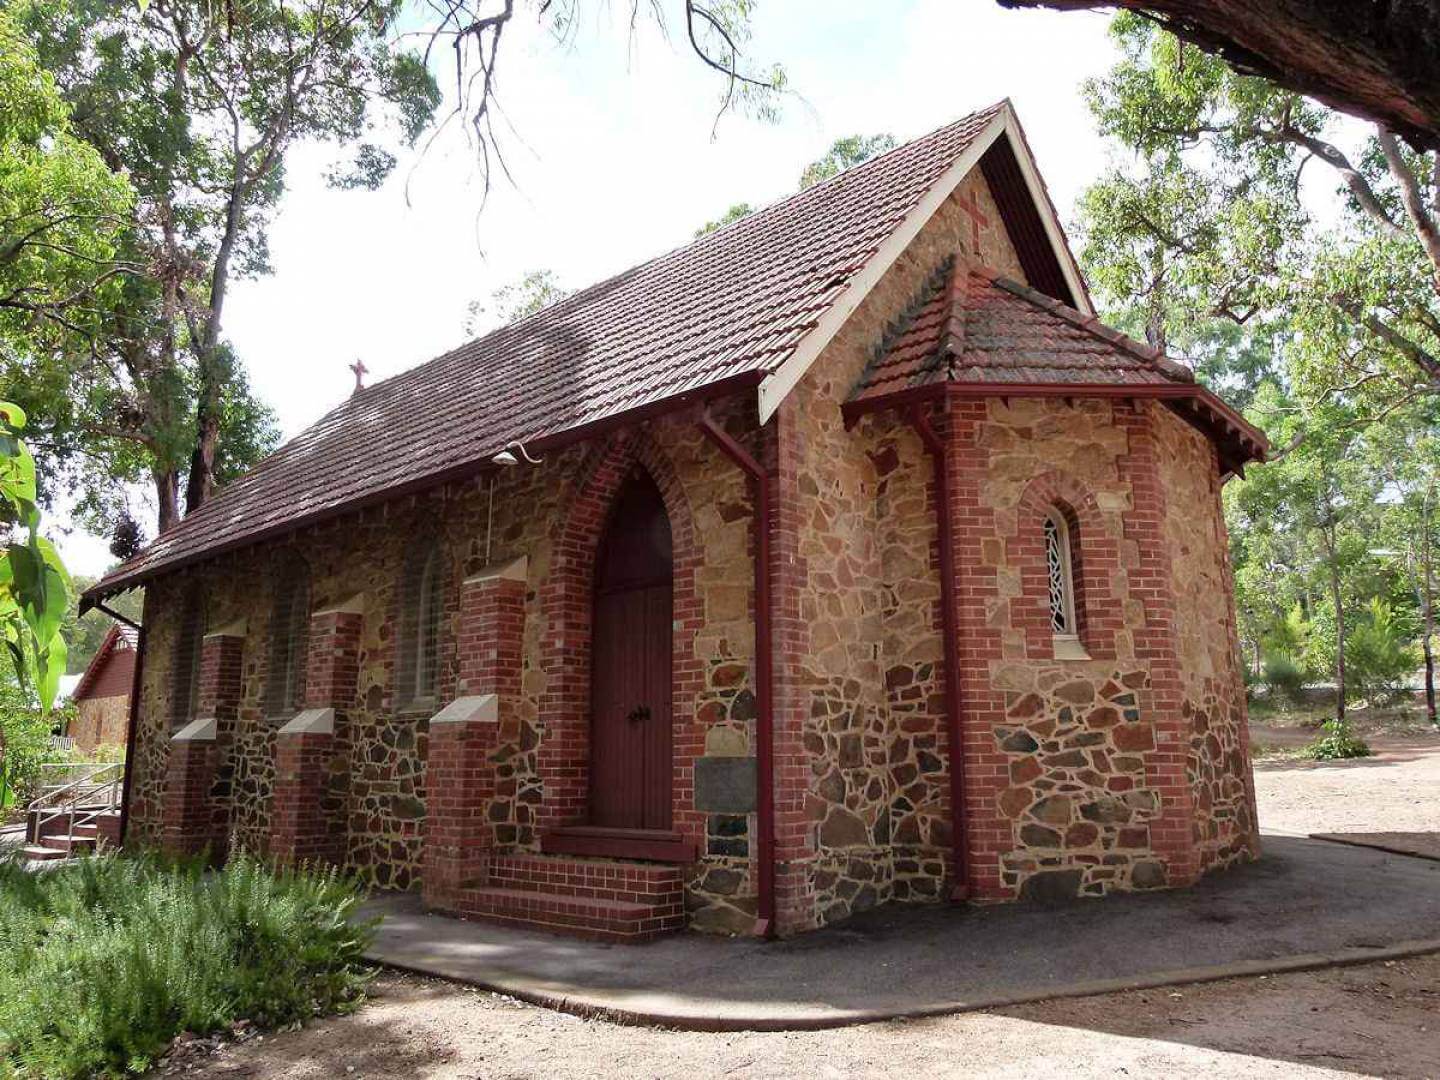 St Cuthbert's Anglican Church